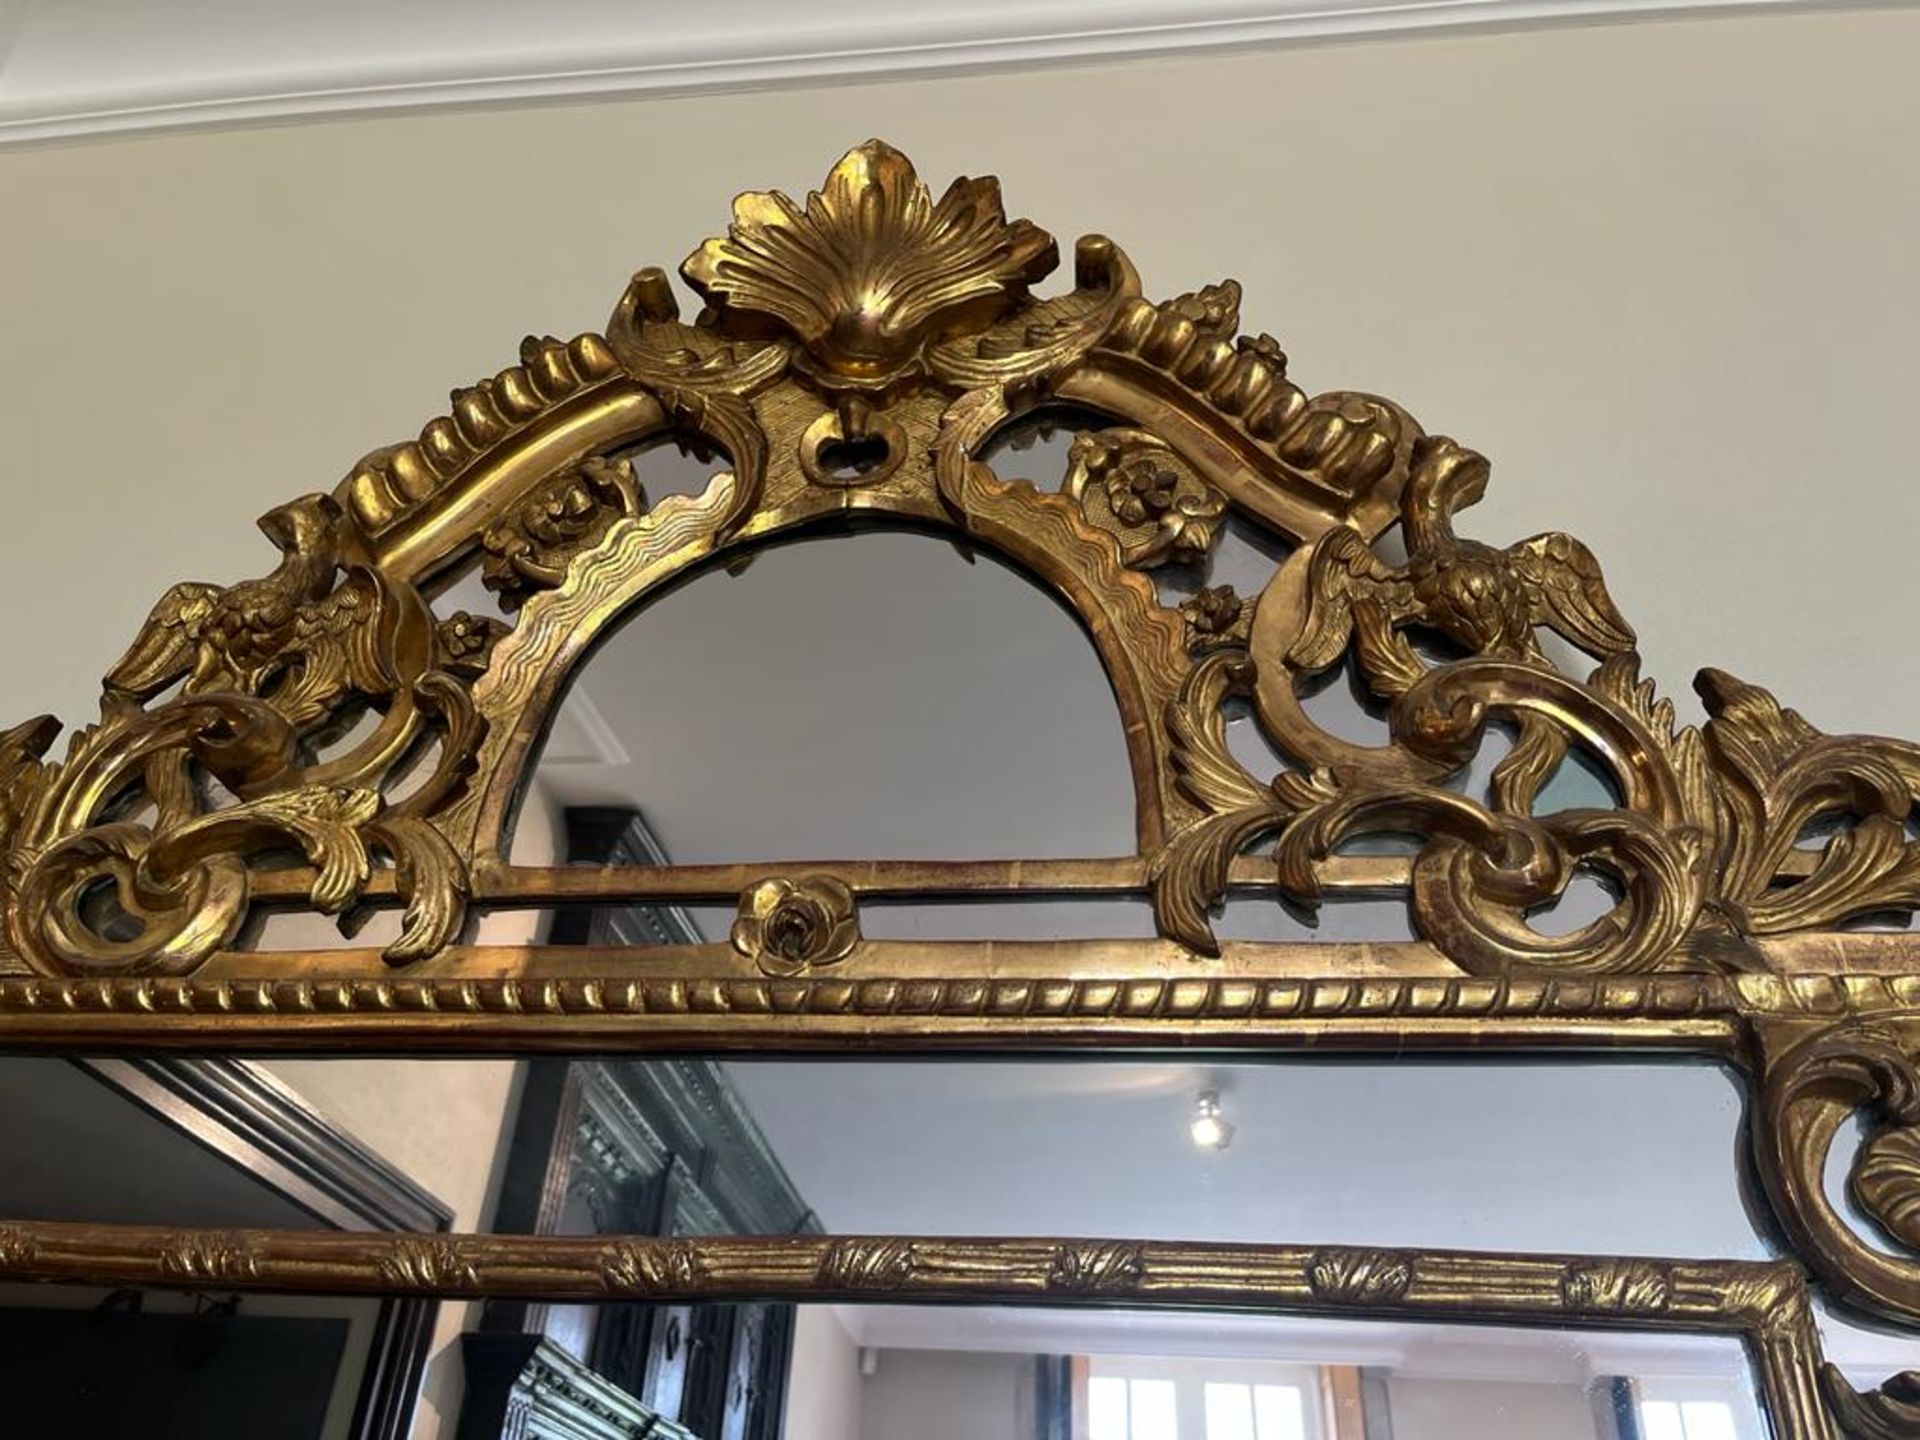 Grand miroir en bois doré à parcloses et fronton Décor d'aigles, de rinceaux feuillagés et fleuris - Image 4 of 4